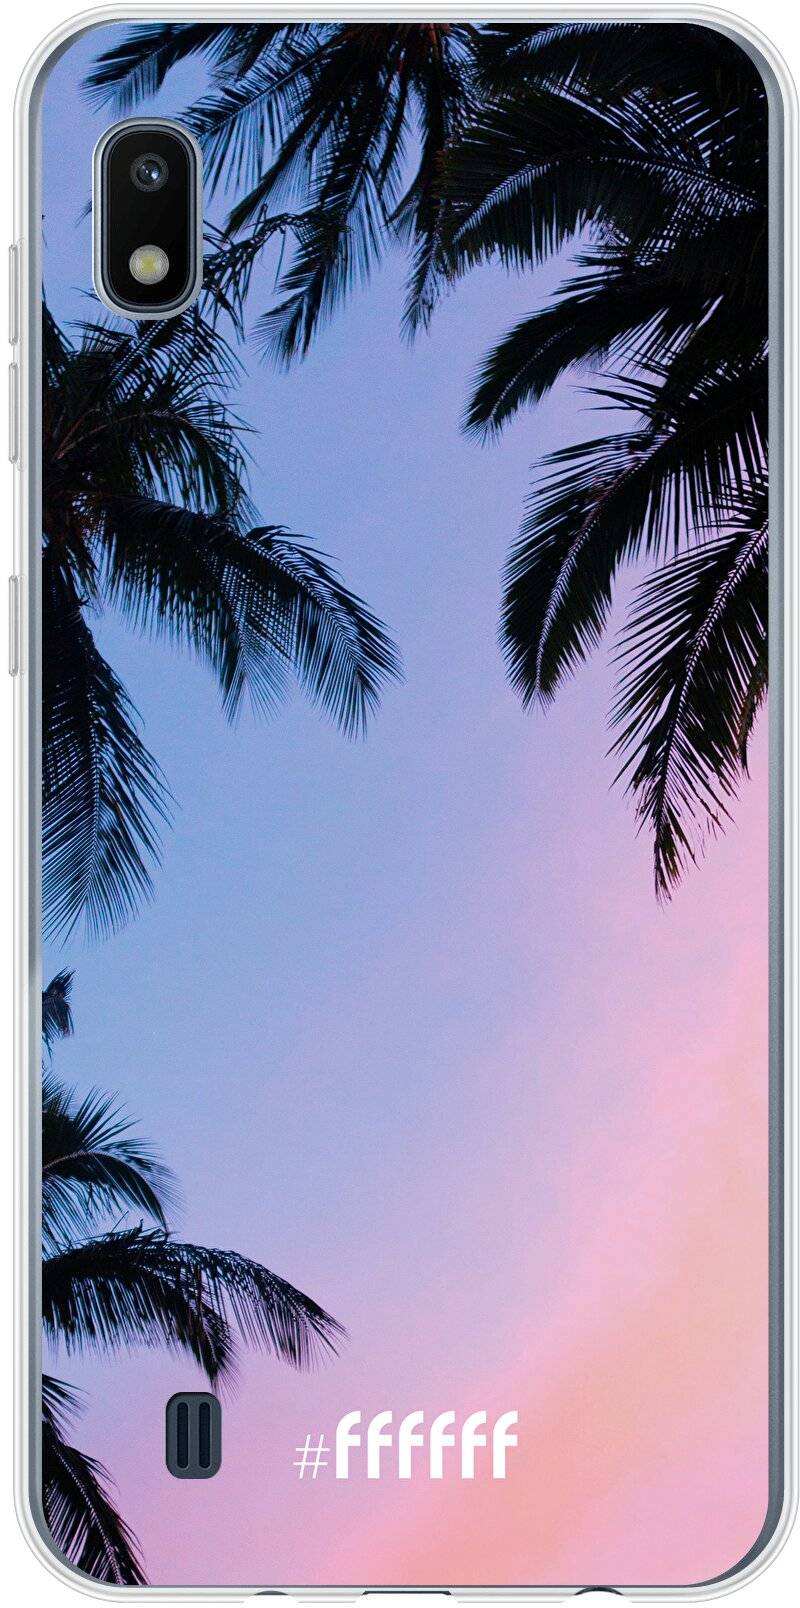 Sunset Palms Galaxy A10